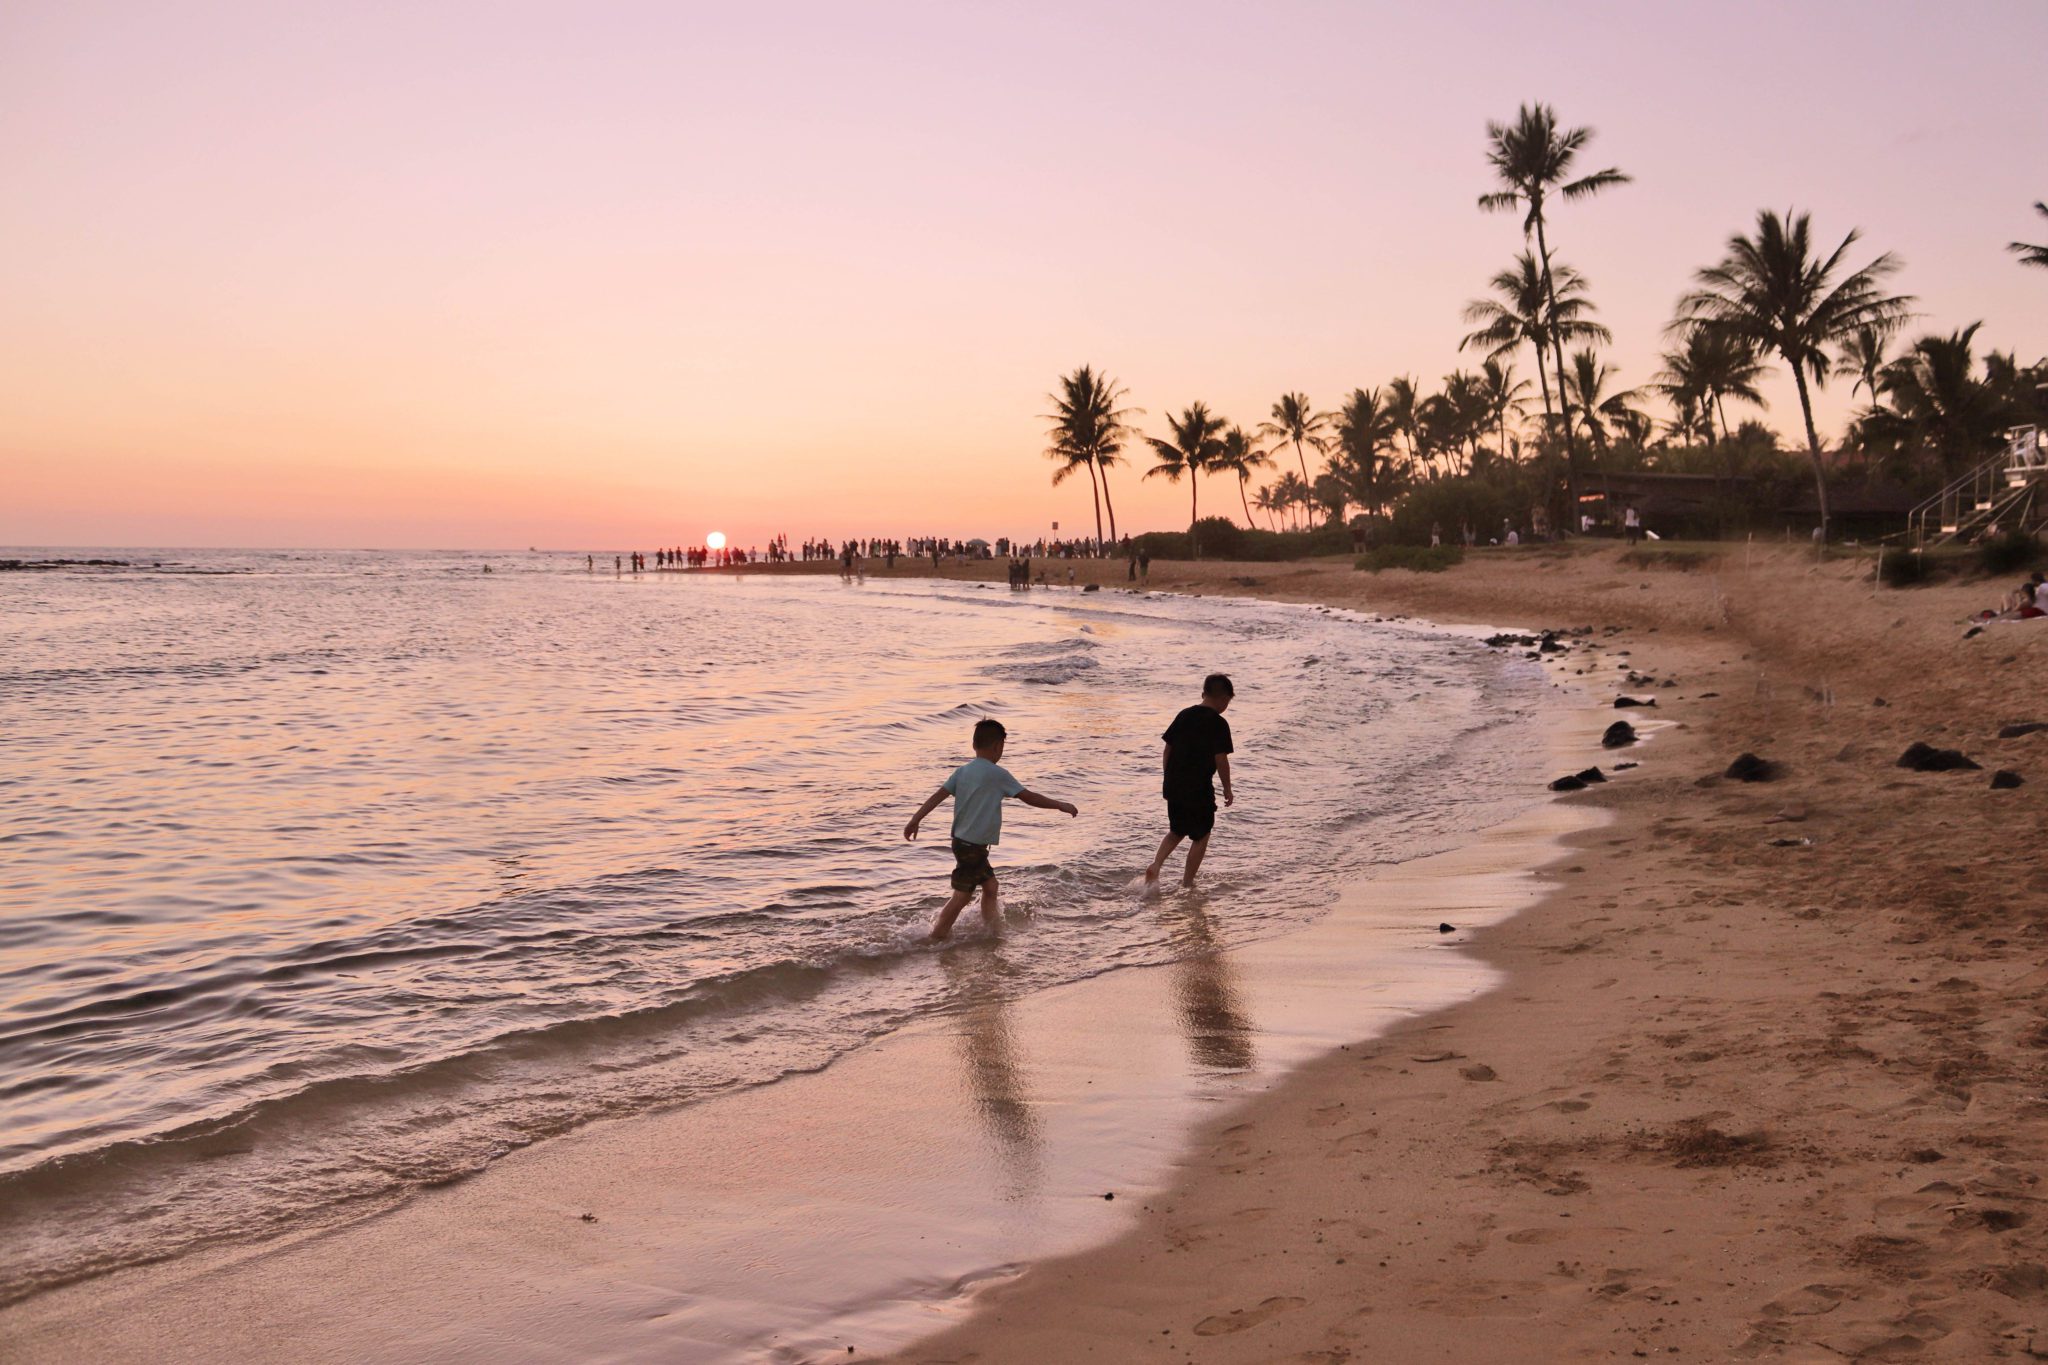 Best beaches in Kauai for kids | Top things to do in Kauai #kauai #hawaii #simplywander #poipubeach